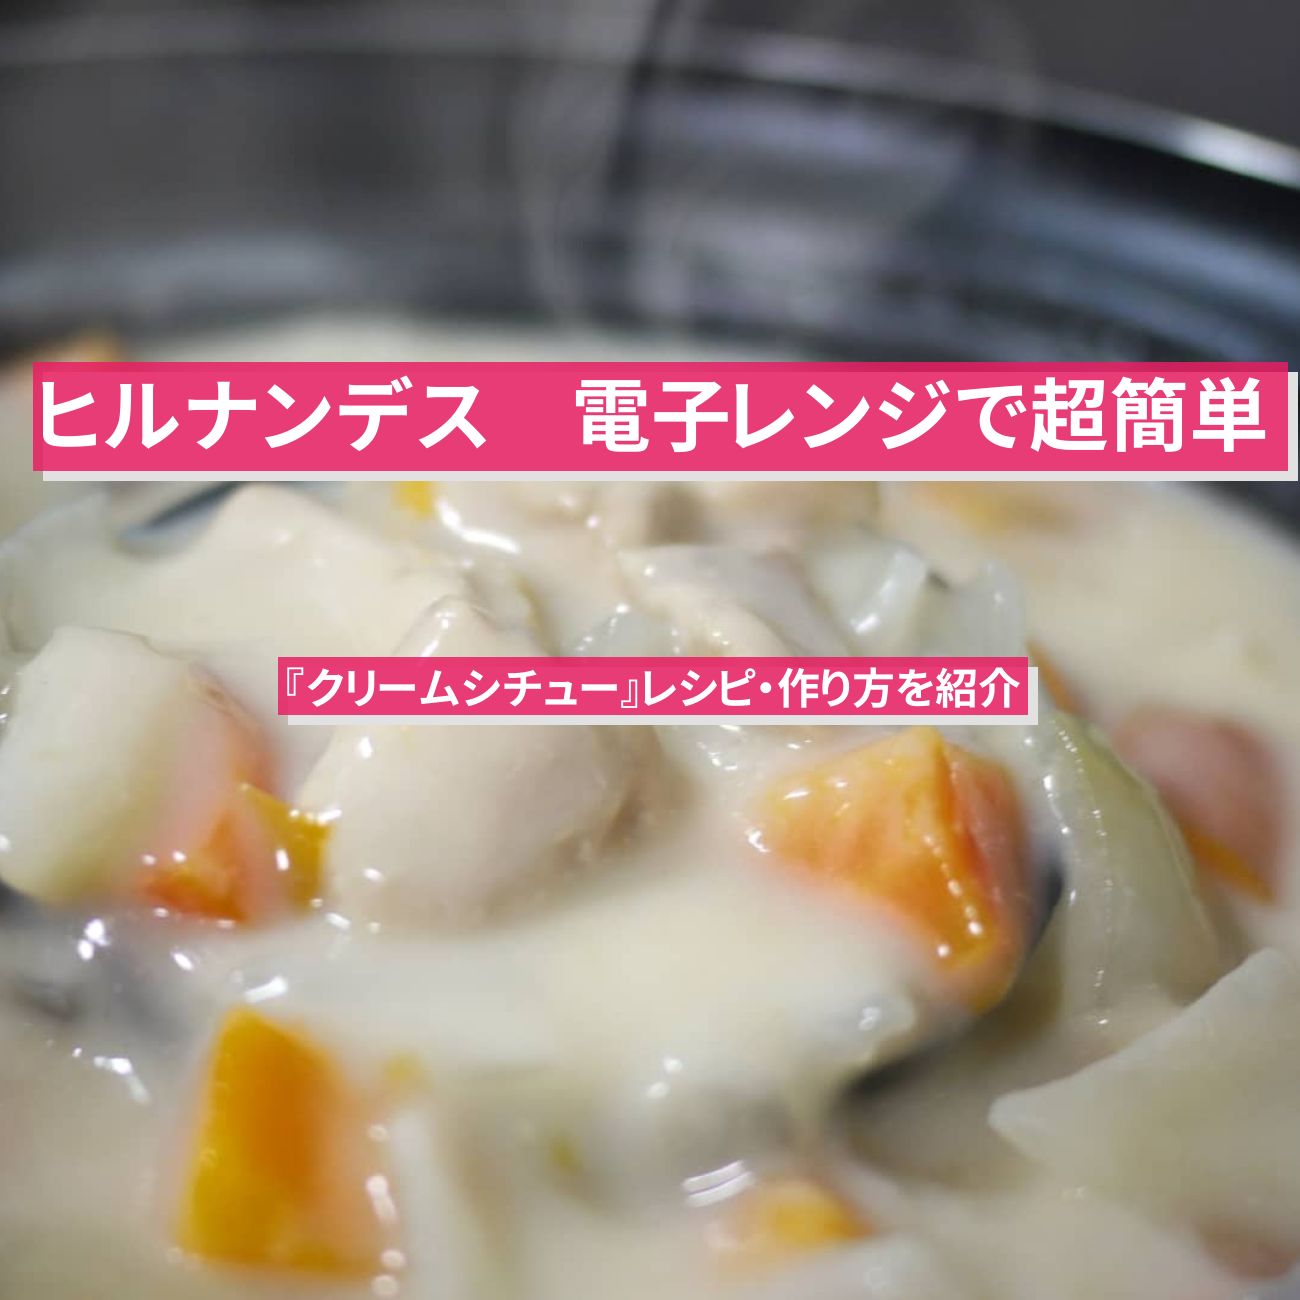 【ヒルナンデス】電子レンジで超簡単『クリームシチュー』レシピ・作り方を紹介